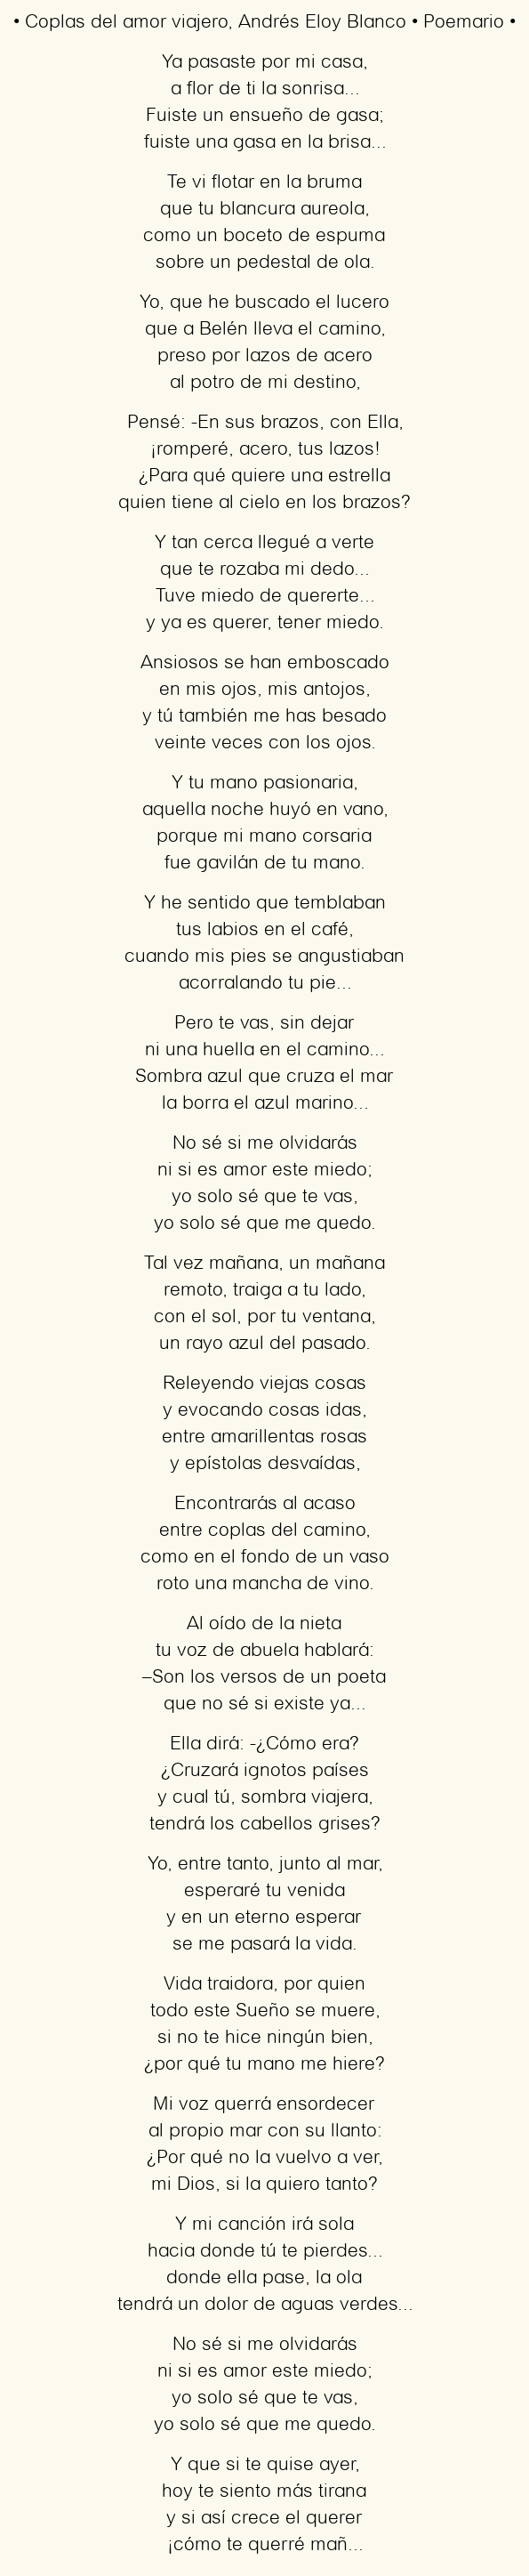 Imagen con el poema Coplas del amor viajero, por Andrés Eloy Blanco